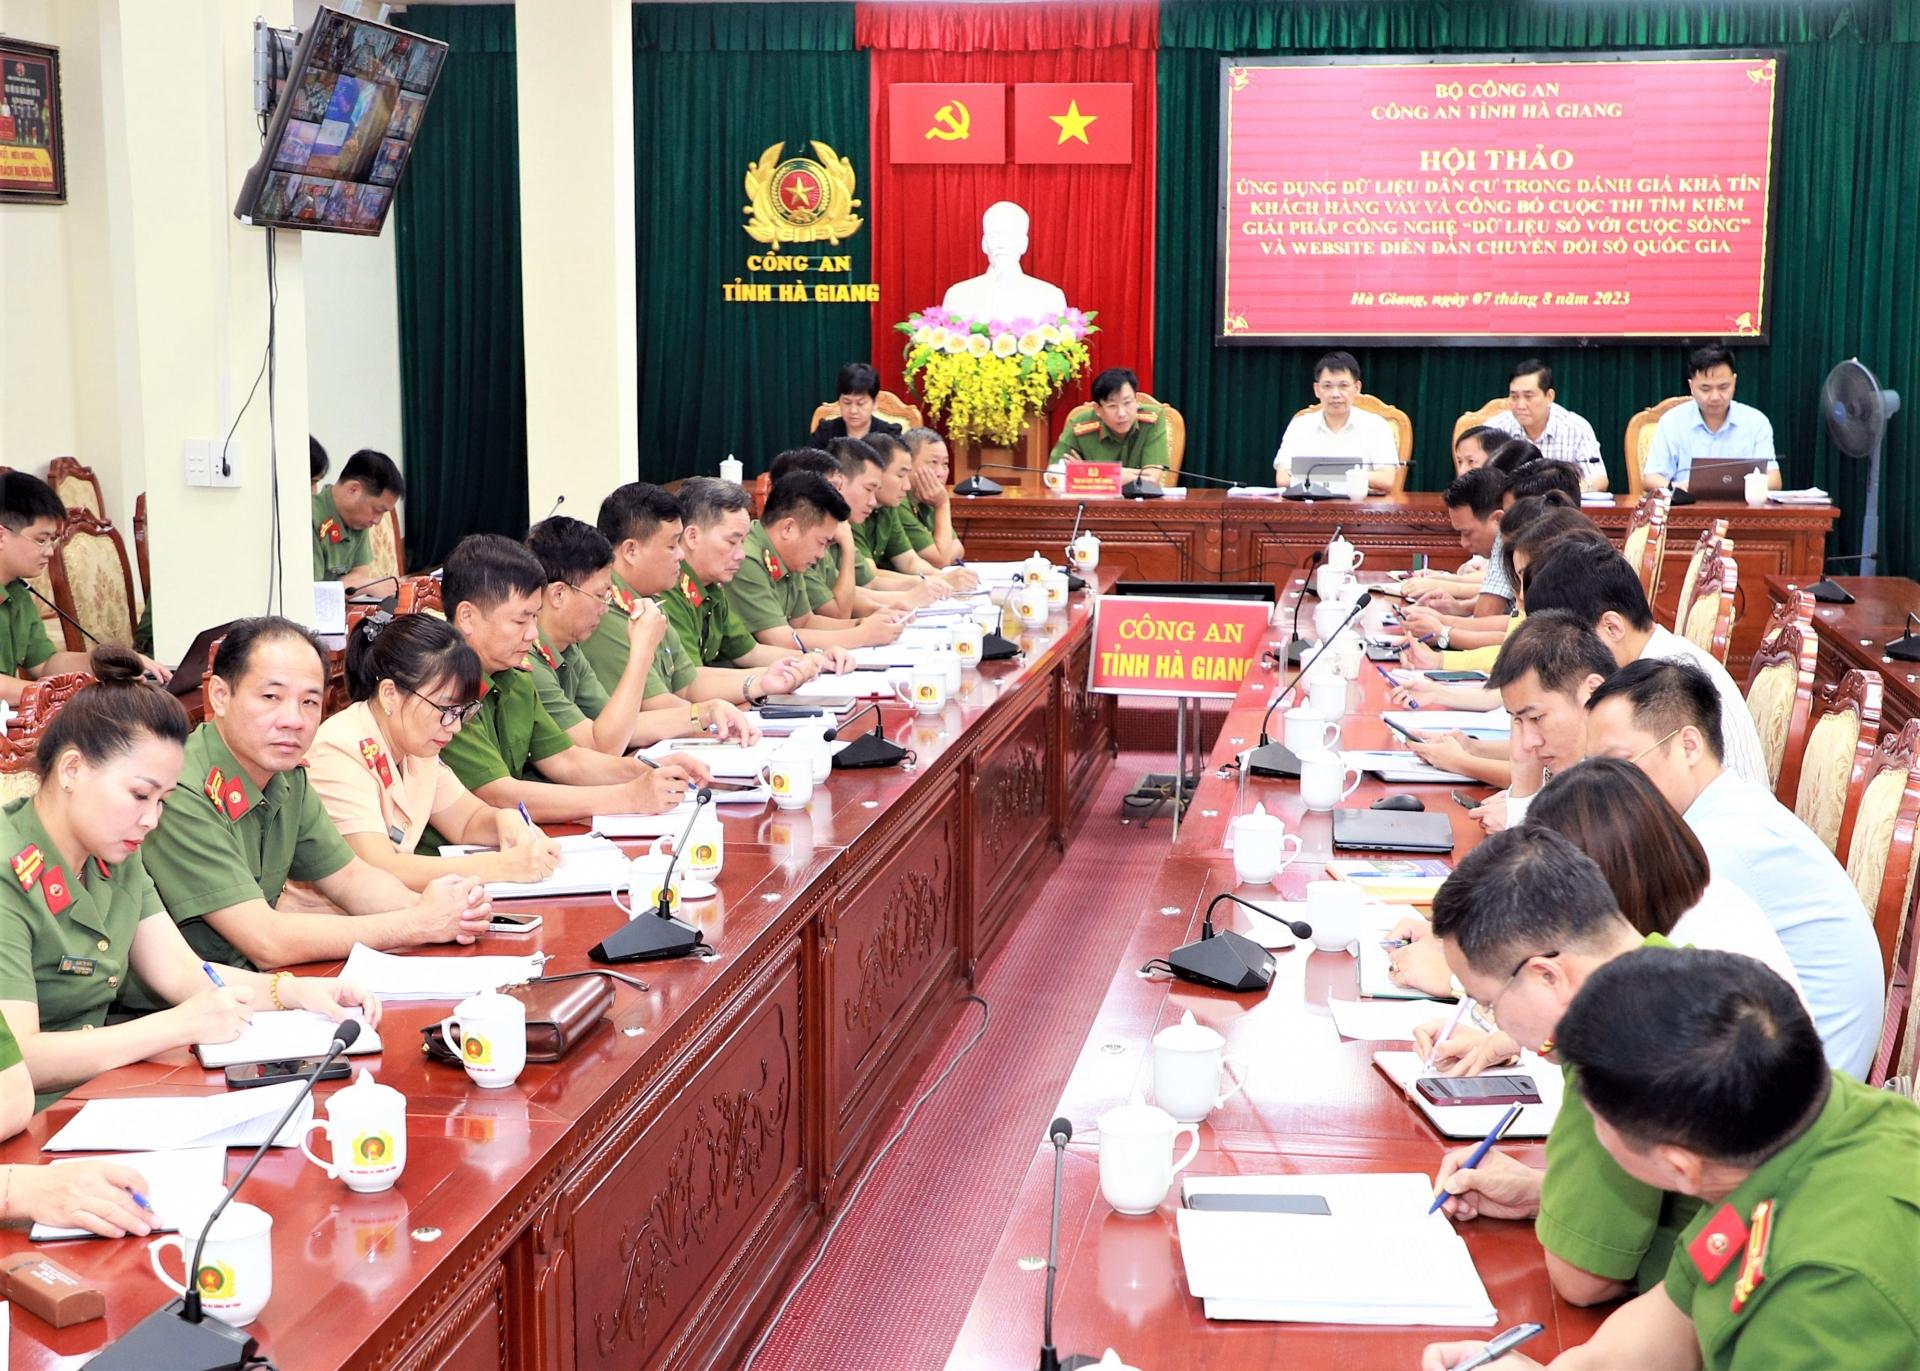 Toàn cảnh Hội thảo tại điểm cầu Công an tỉnh Hà Giang.